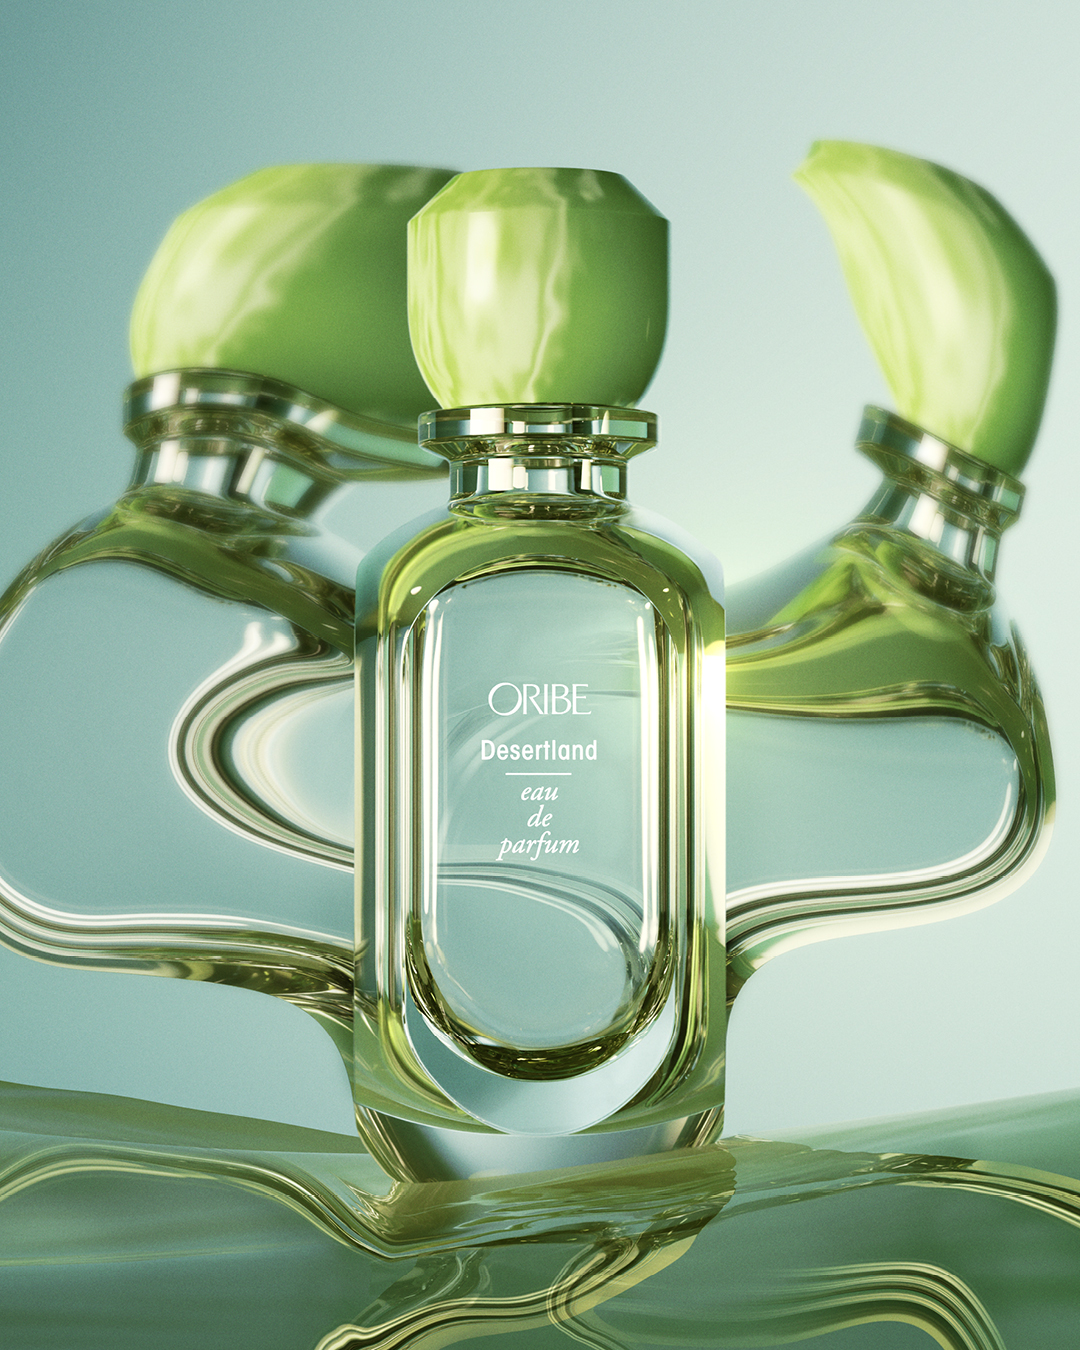 New Oribe Eau de Parfum Trio - A Review ~ Fragrance Reviews